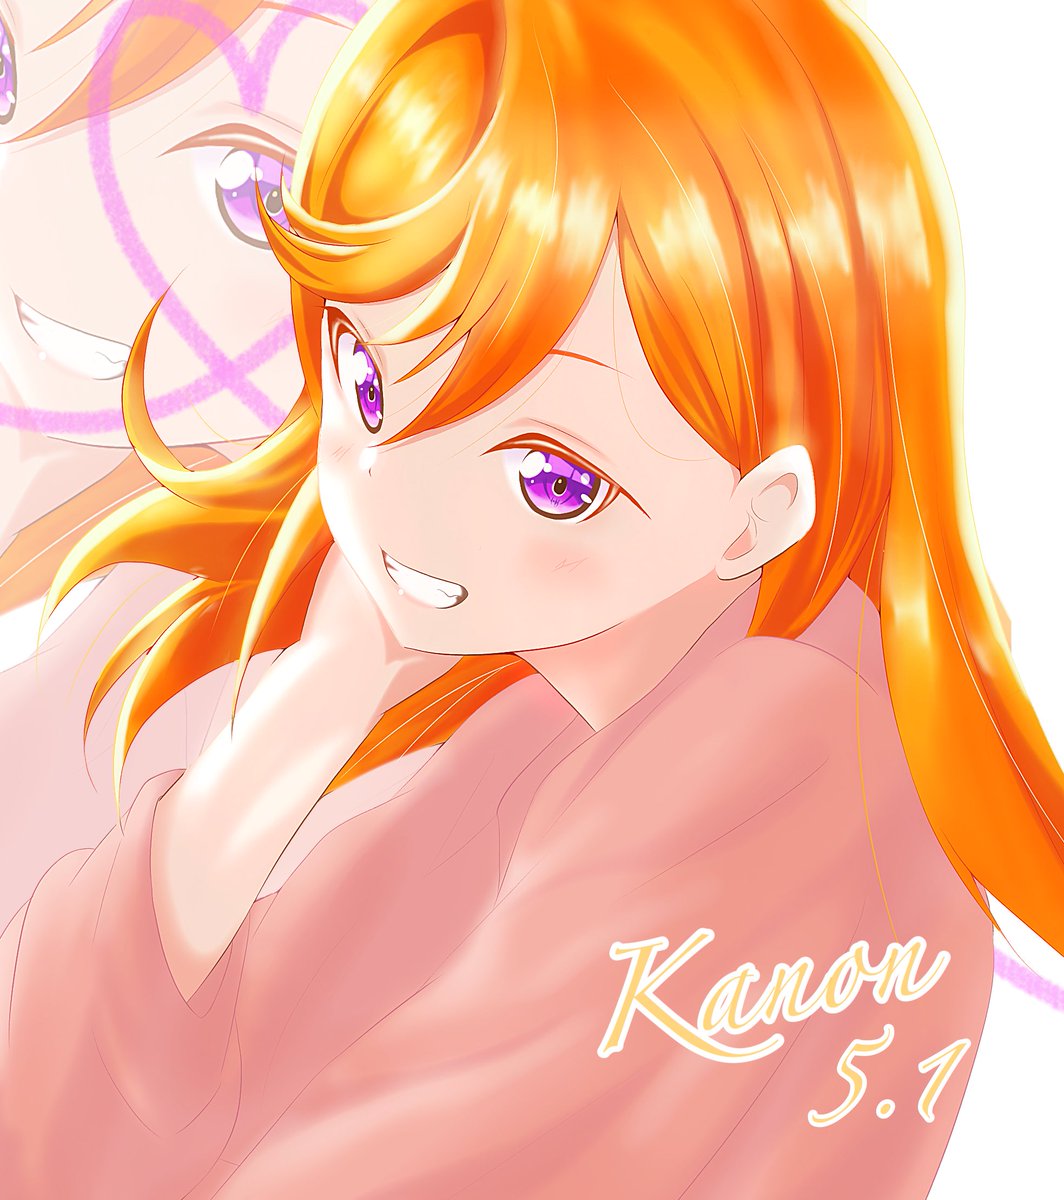 shibuya kanon 1girl purple eyes long hair solo orange hair smile bangs  illustration images